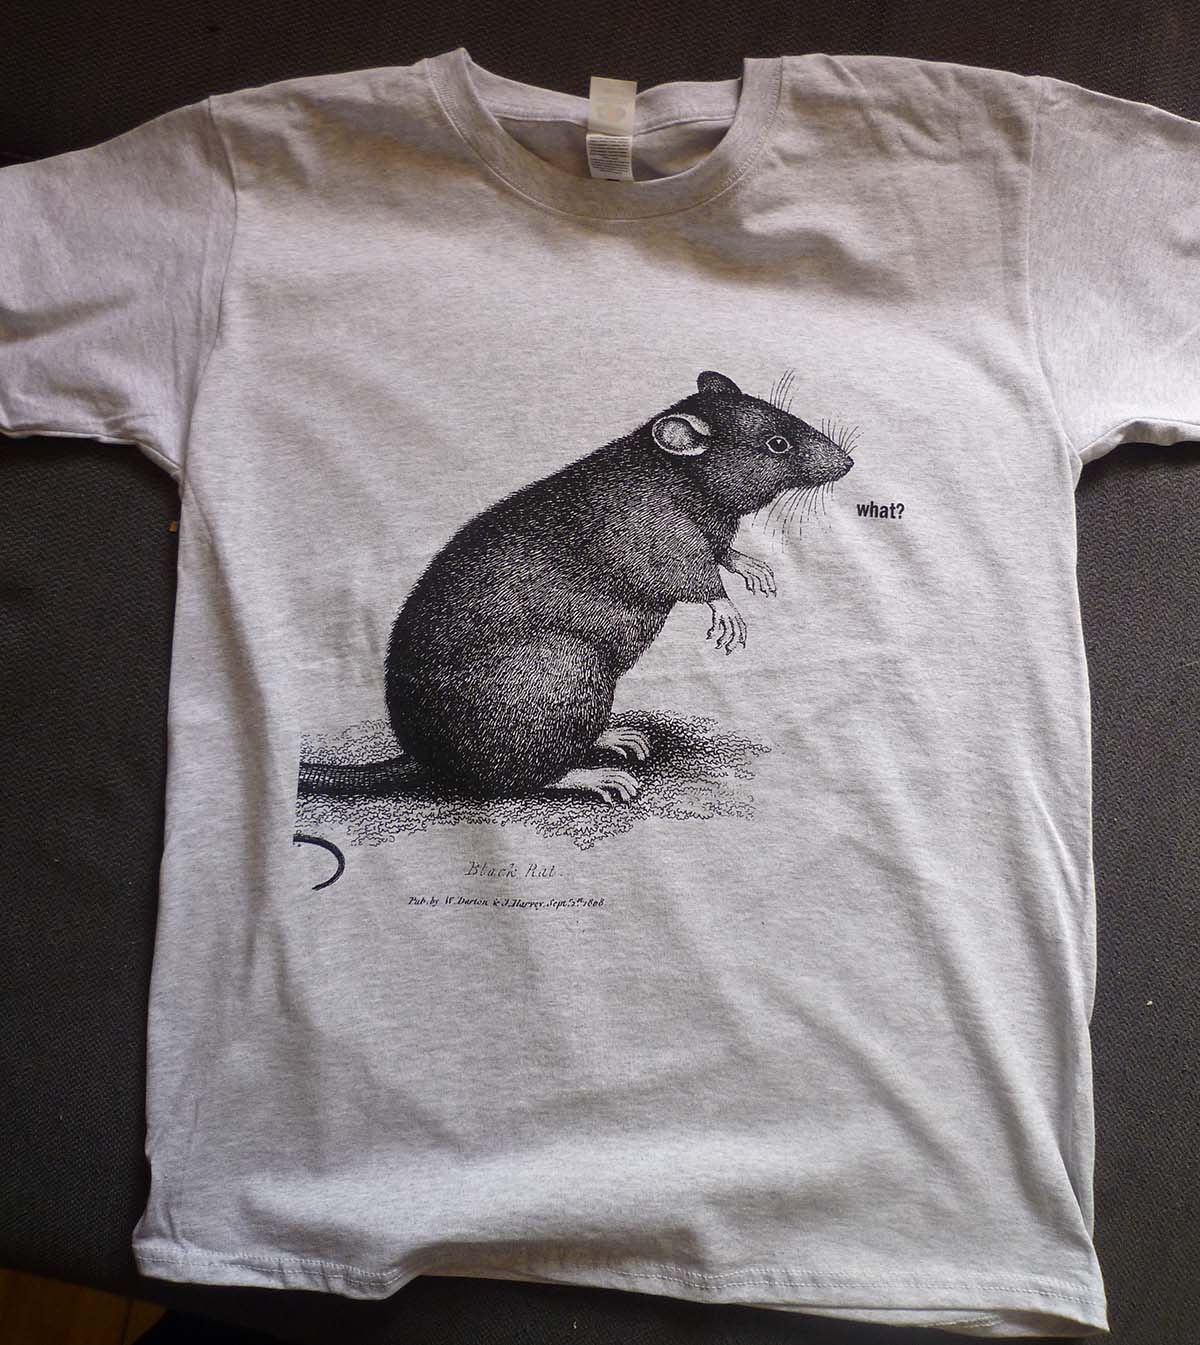 The Rat T-shirt